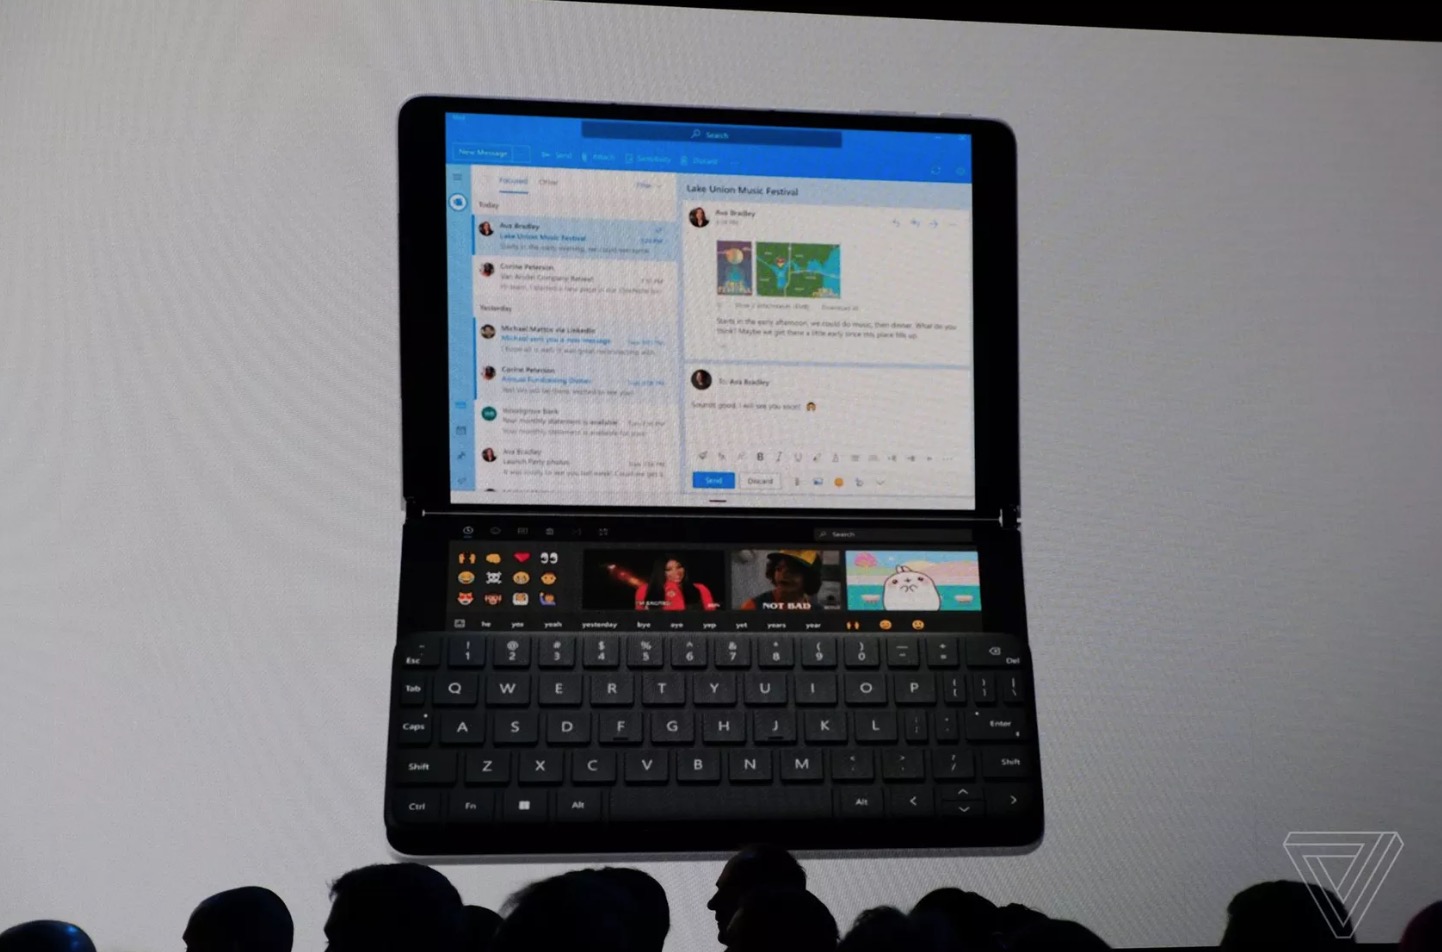 Surface Neo chính
thức ra mắt: Laptop 2 màn hình, chạy Windows 10X, chip Intel
Lakefield